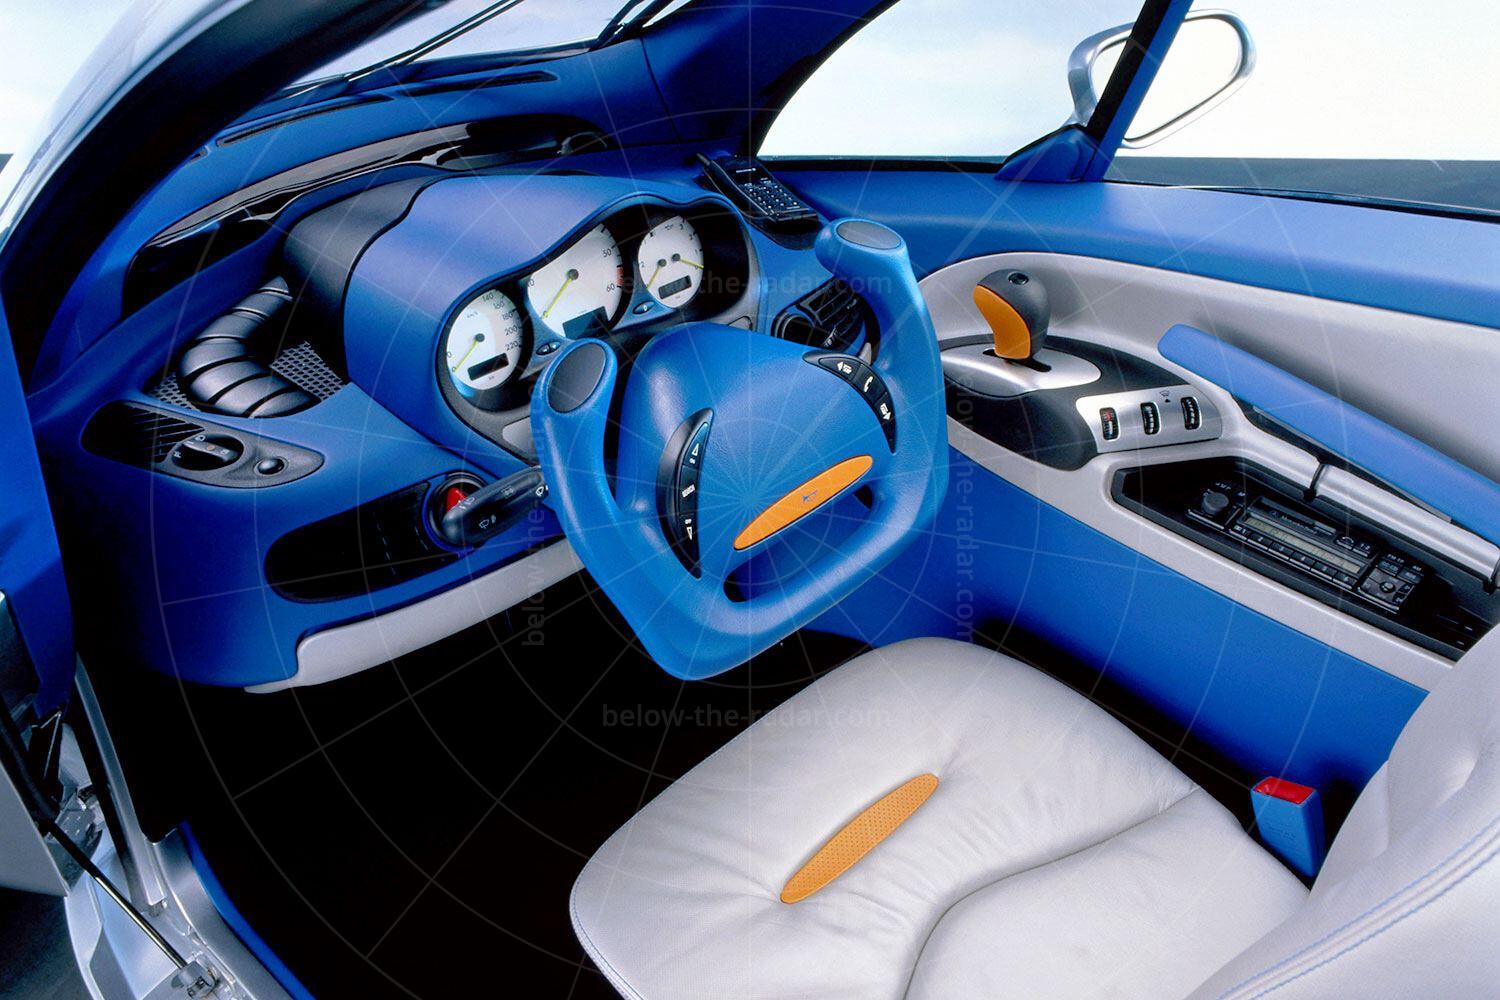 Mercedes F300 Life-Jet interior Pic: Mercedes-Benz | Mercedes F300 Life-Jet interior